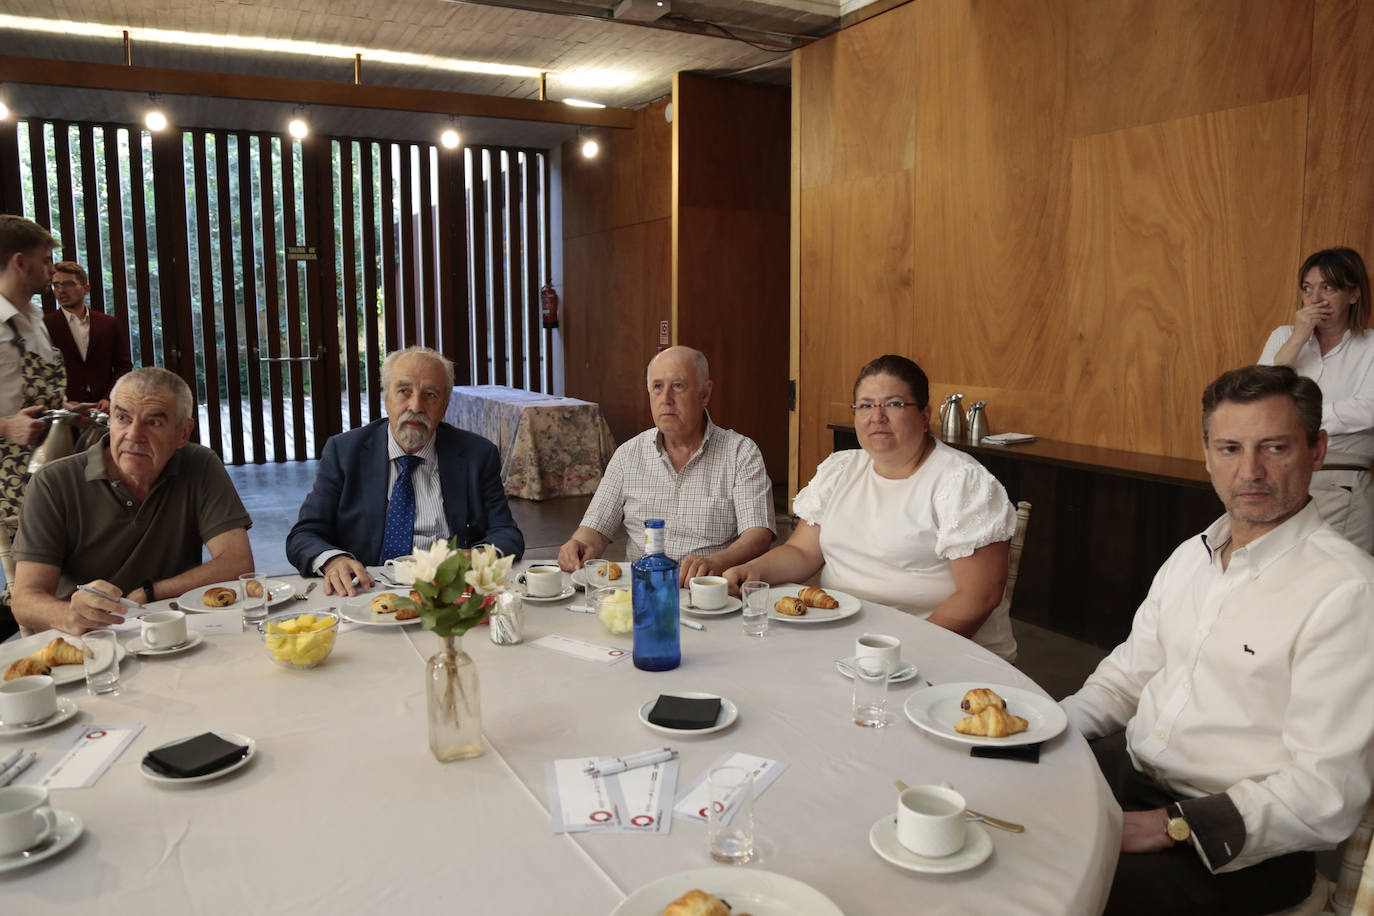 De dcha. a izda.: Gonzalo Cuadrado, Angela Hernández, Mariano Pordomingo, Pedro Grijalba y Faustino Andrés